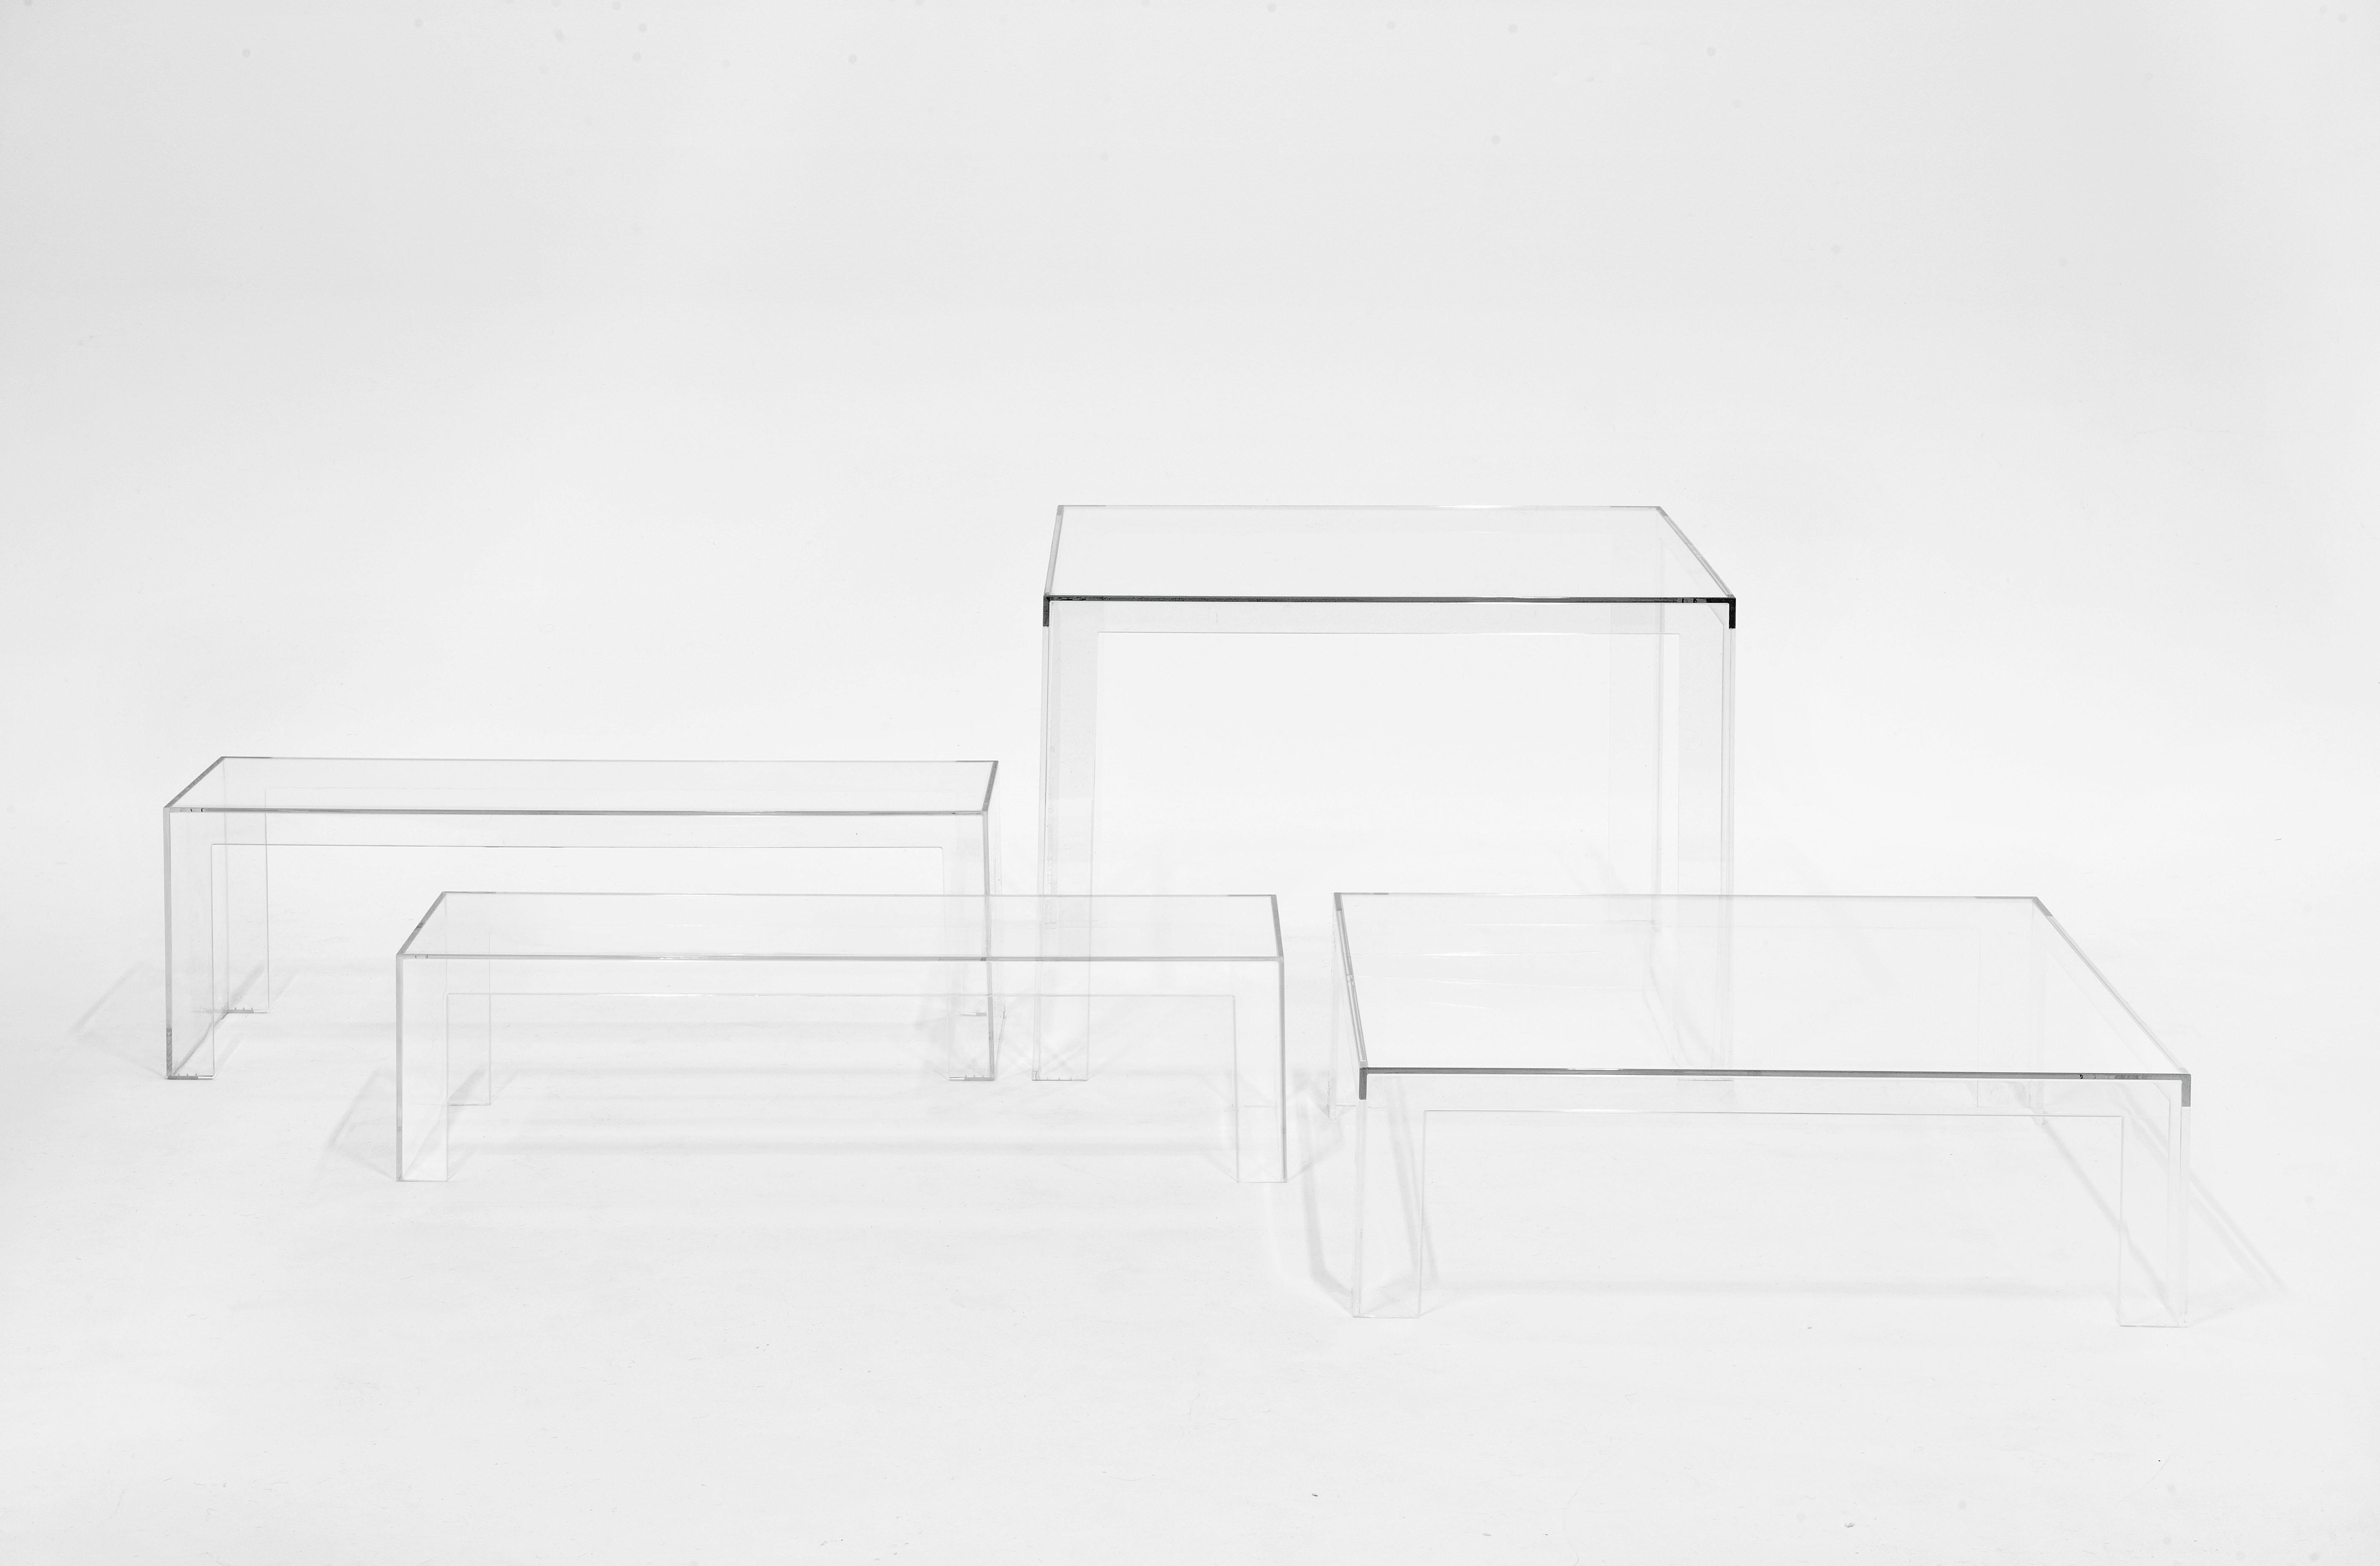 Der von Tokujin Yoshioka entworfene Invisible Table vereint Leichtigkeit und Solidität, Anmut und Eleganz sowie Zweckmäßigkeit und Stil. Durch seine Einfachheit und Reinheit der Form passt er sich jeder Umgebung an. Die raffinierte Farbpalette, die